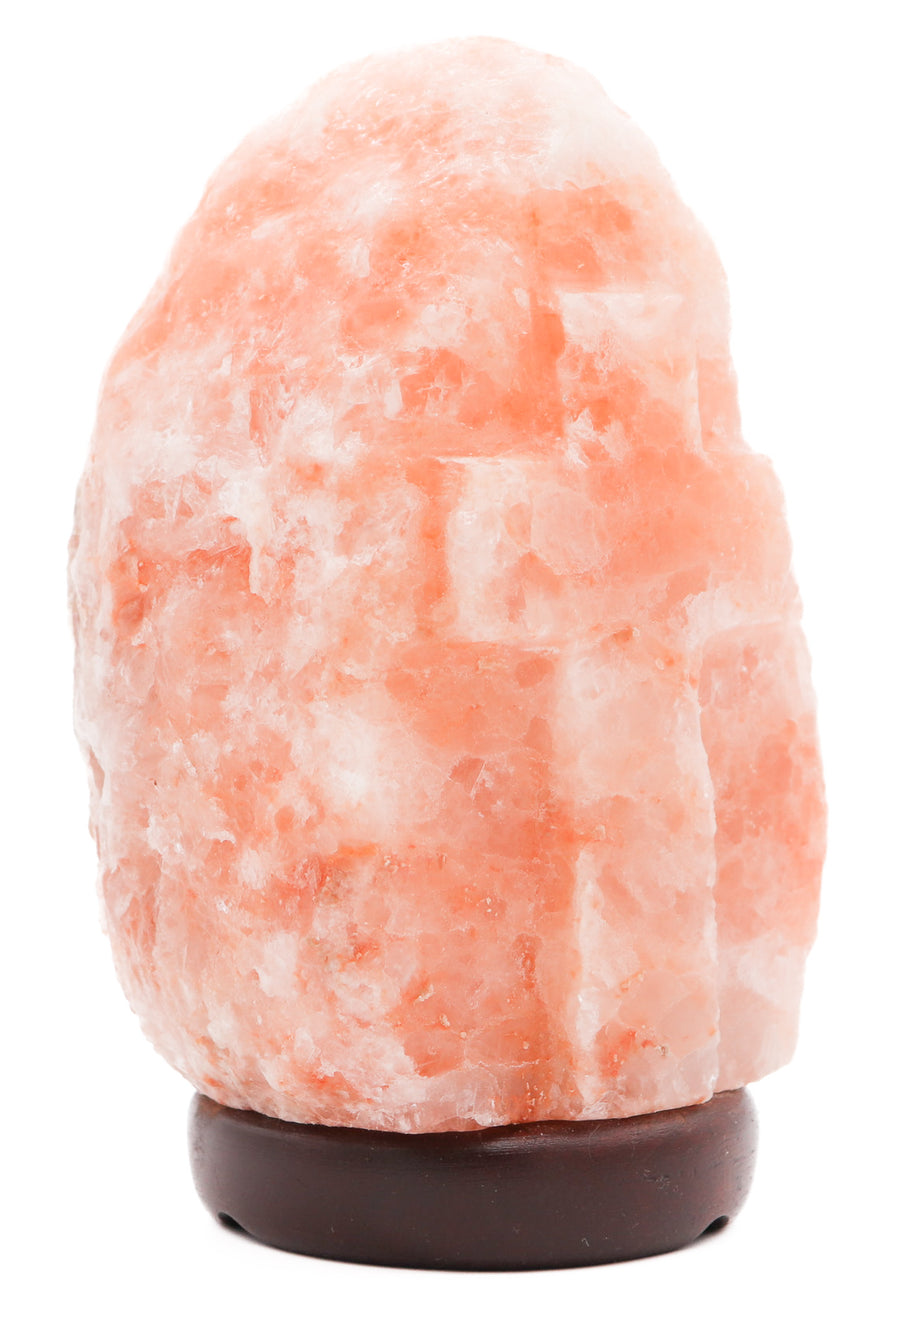 Natural Cross Engraved Pink Himalayan Salt Lamp 6-8 Lbs